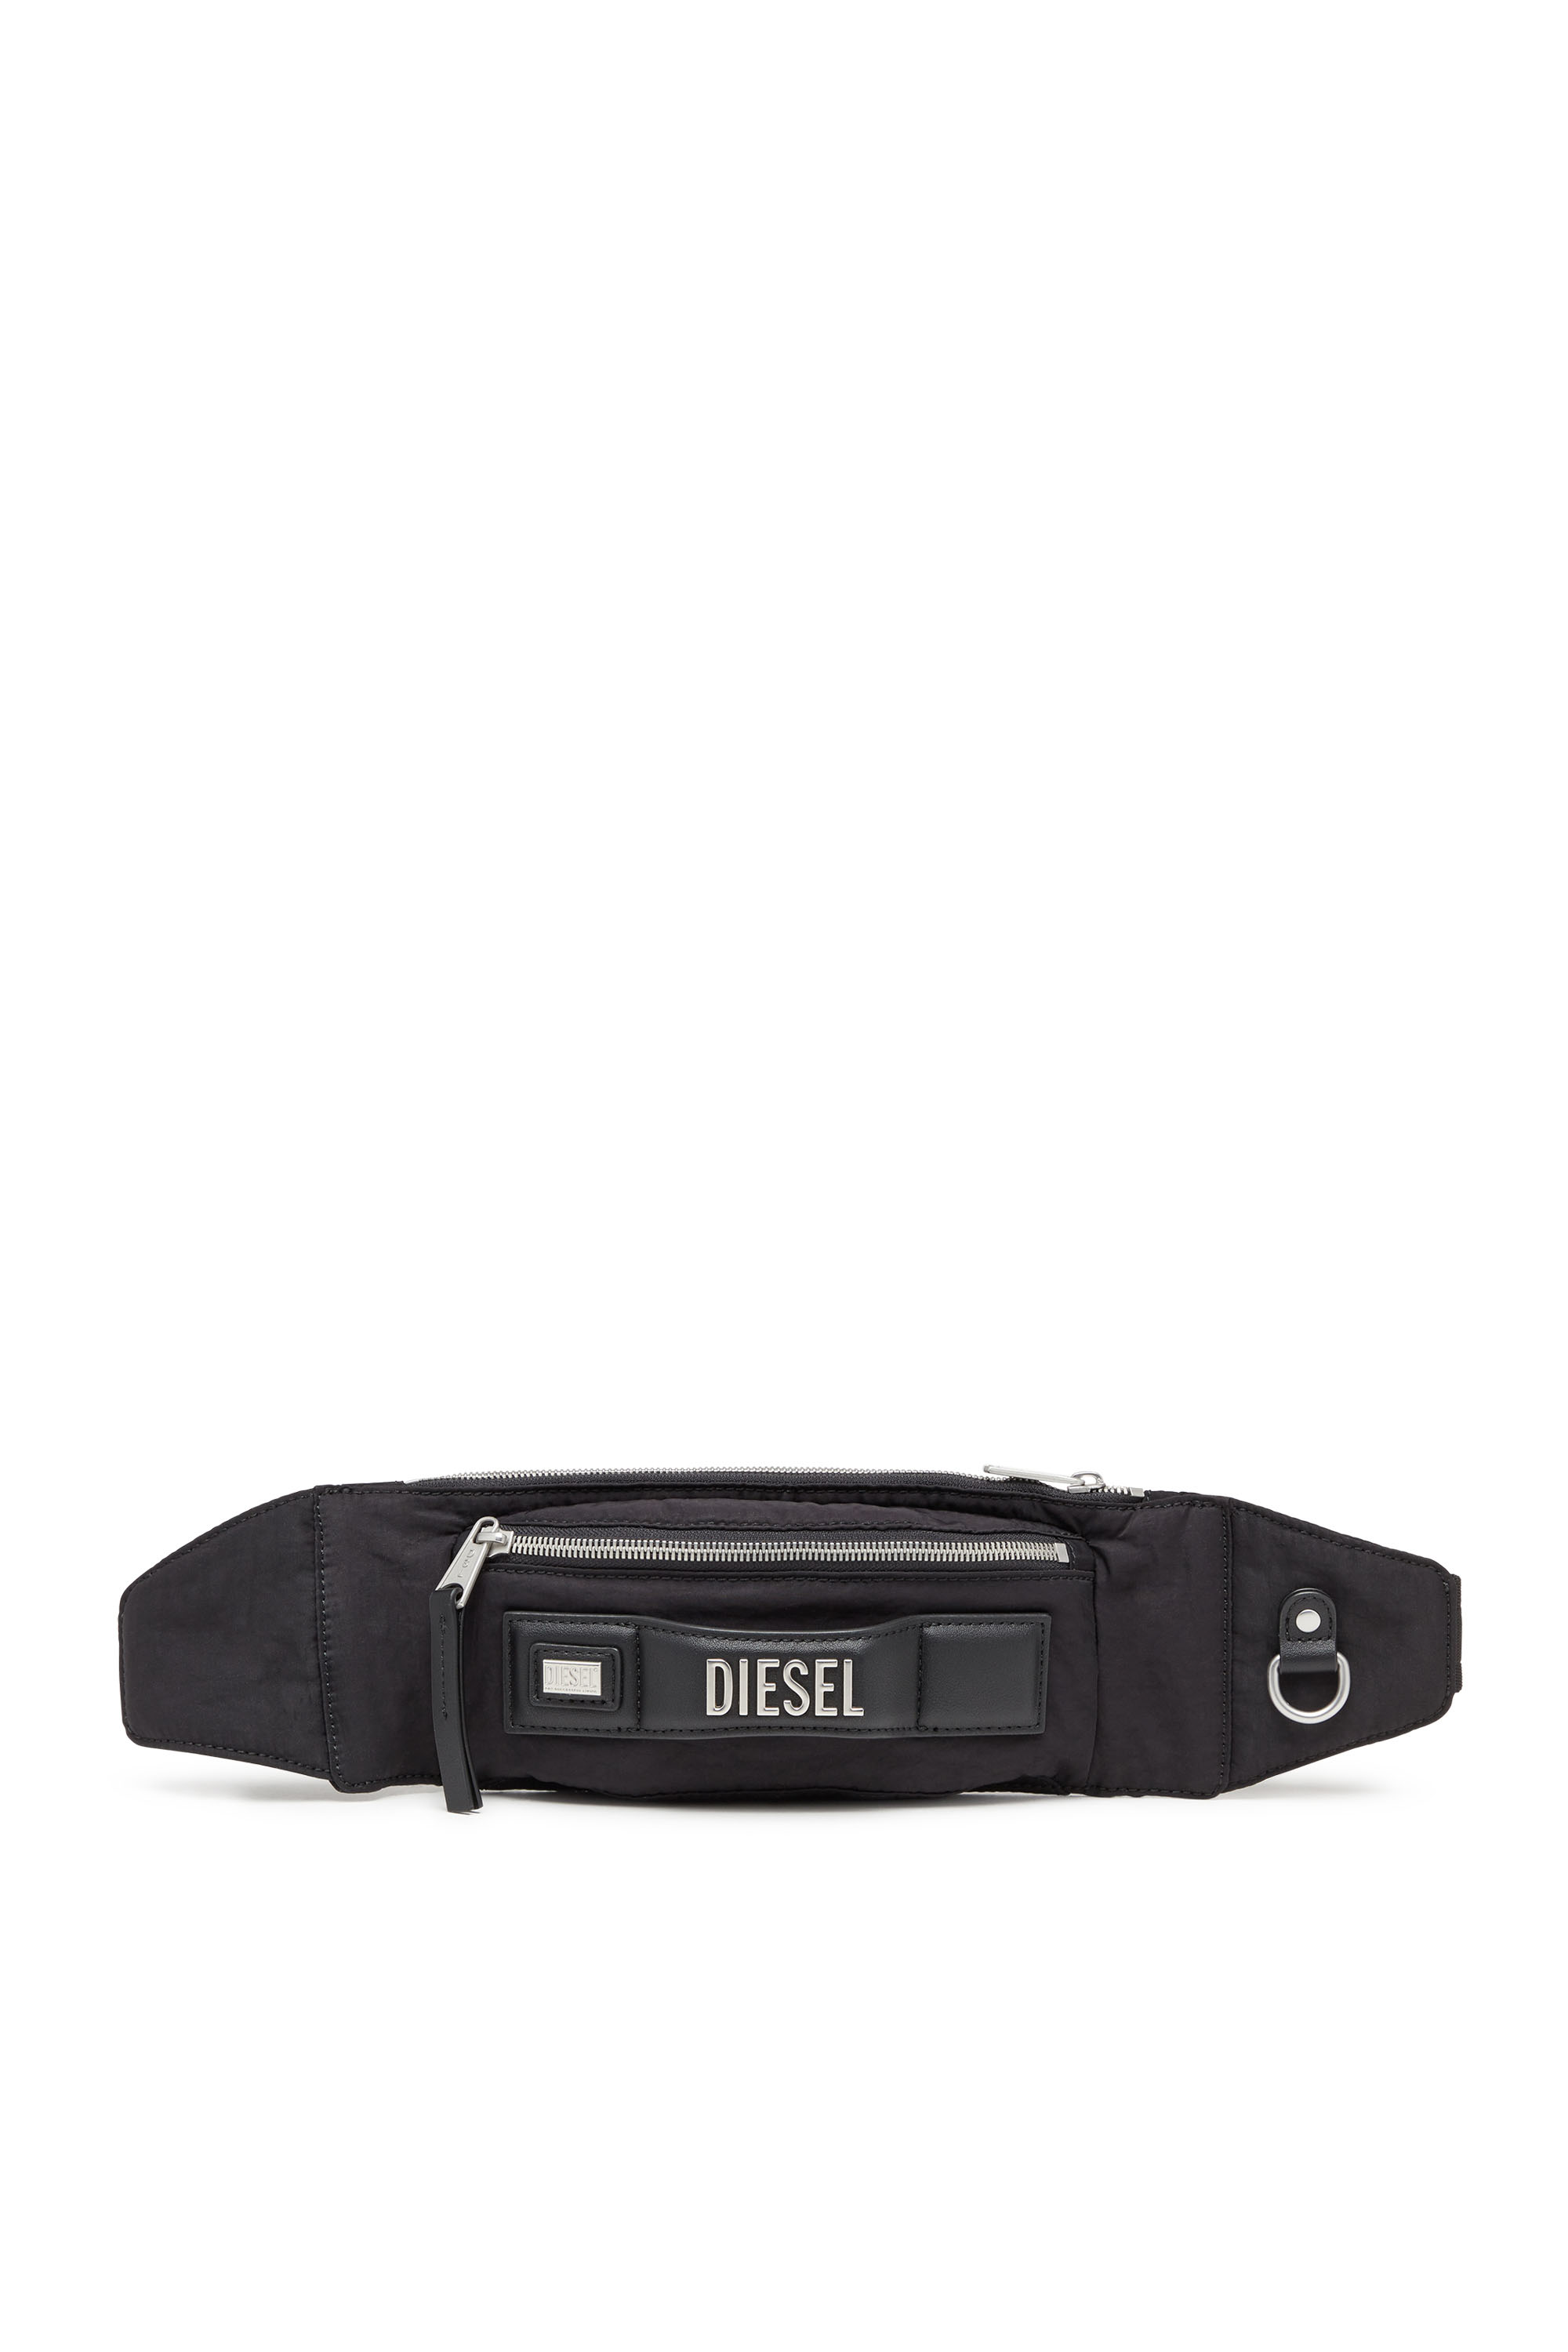 Diesel - Logos Belt Bag - Riñonera de nylon reciclado - Bolsas con cinturón - Unisex - Negro